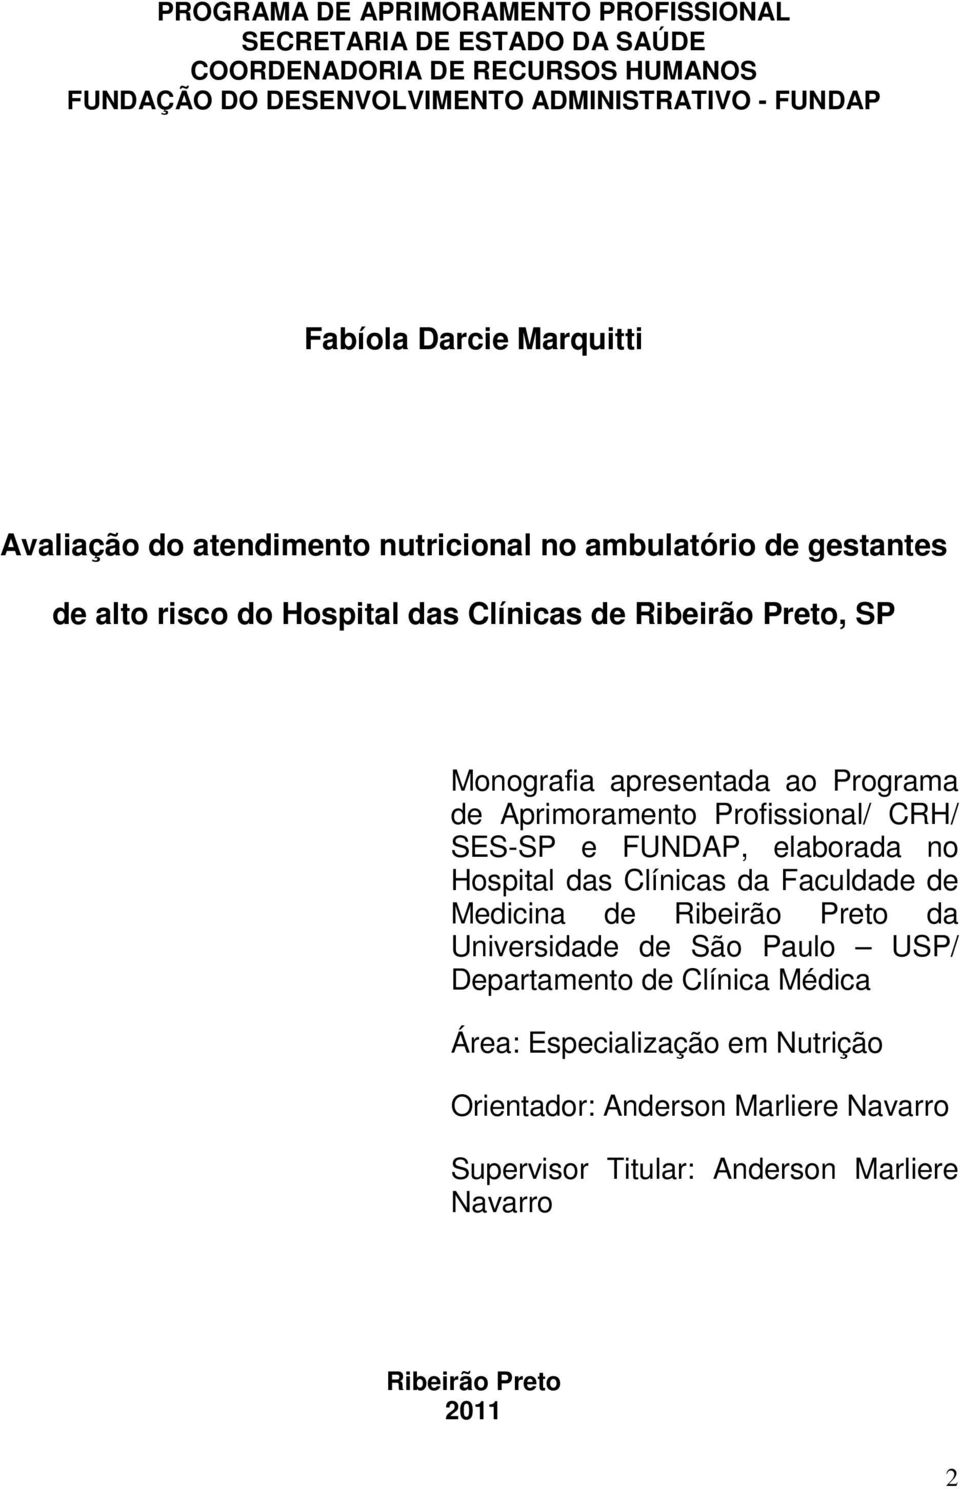 Programa de Aprimoramento Profissional/ CRH/ SES-SP e FUNDAP, elaborada no Hospital das Clínicas da Faculdade de Medicina de Ribeirão Preto da Universidade de São Paulo